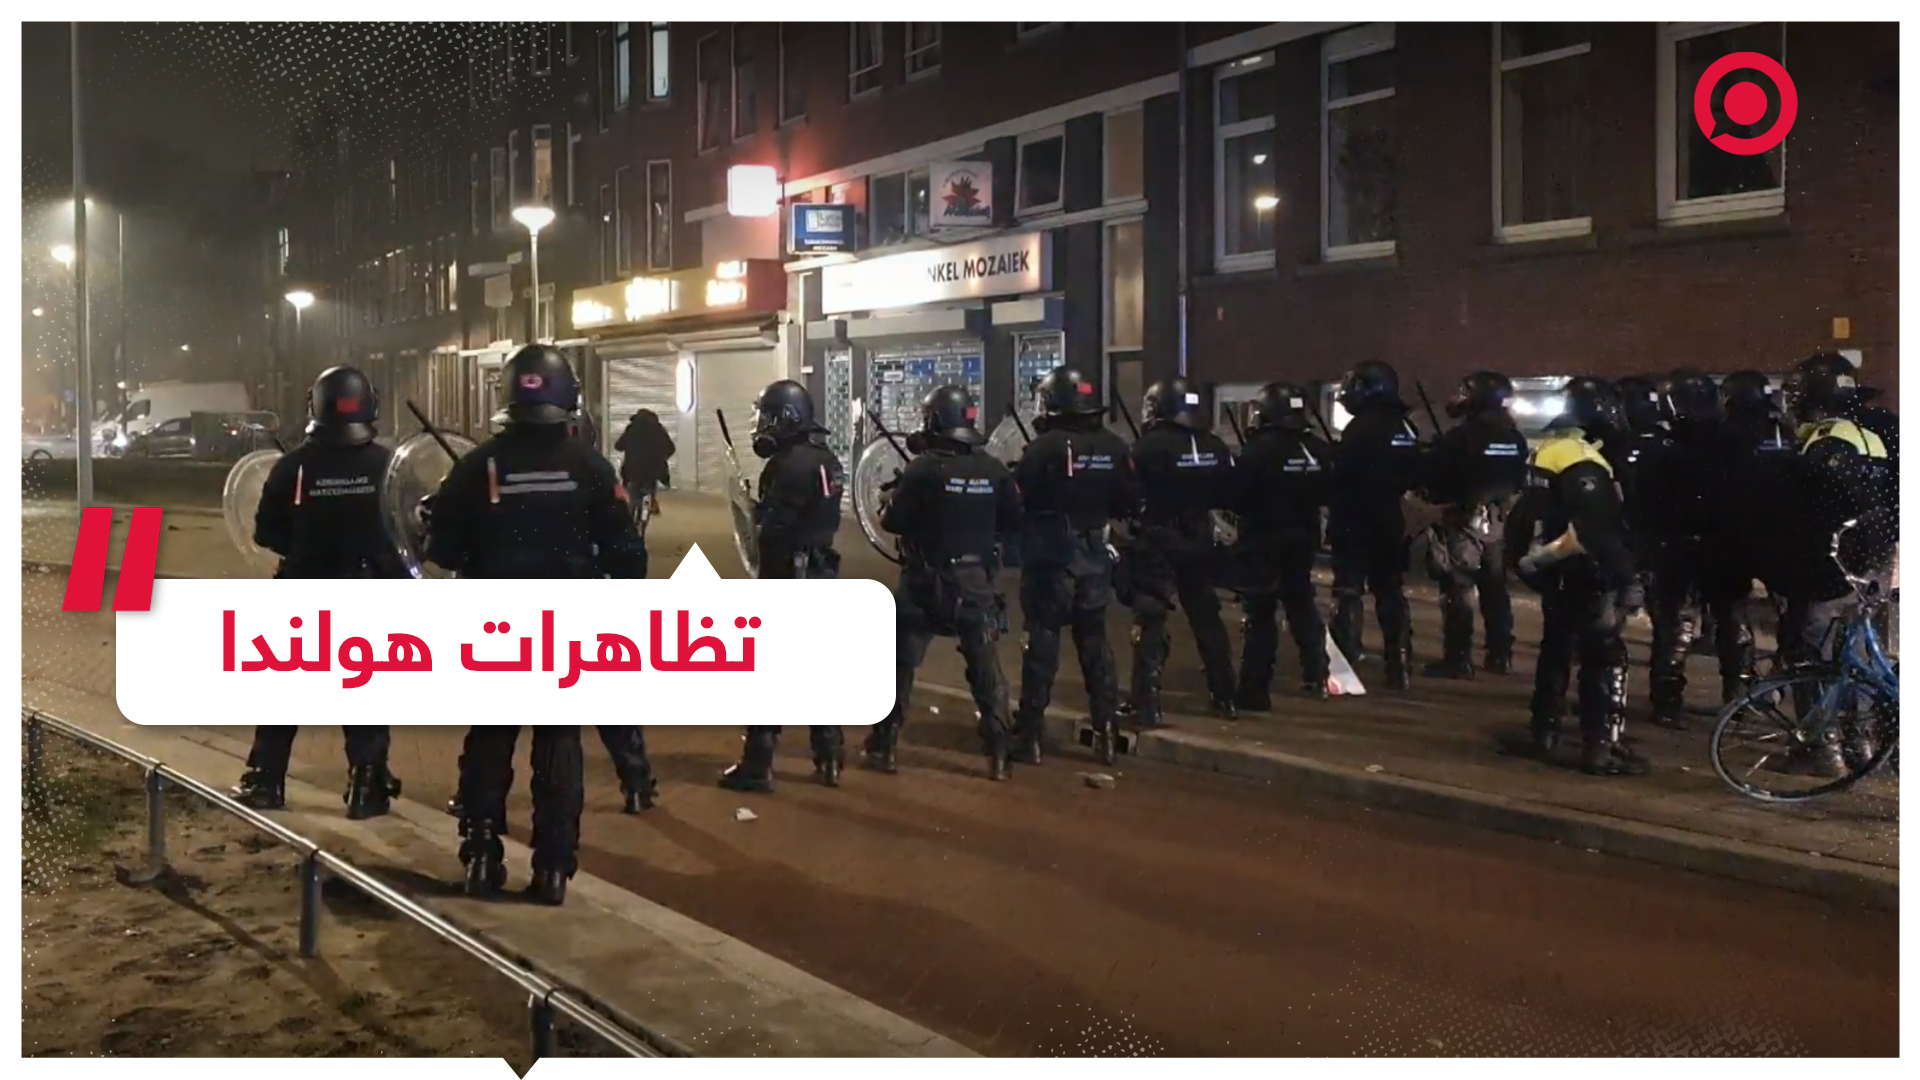 احتجاجات في هولندا ومواجهات مع الشرطة واعتقال نحو 300 شخص